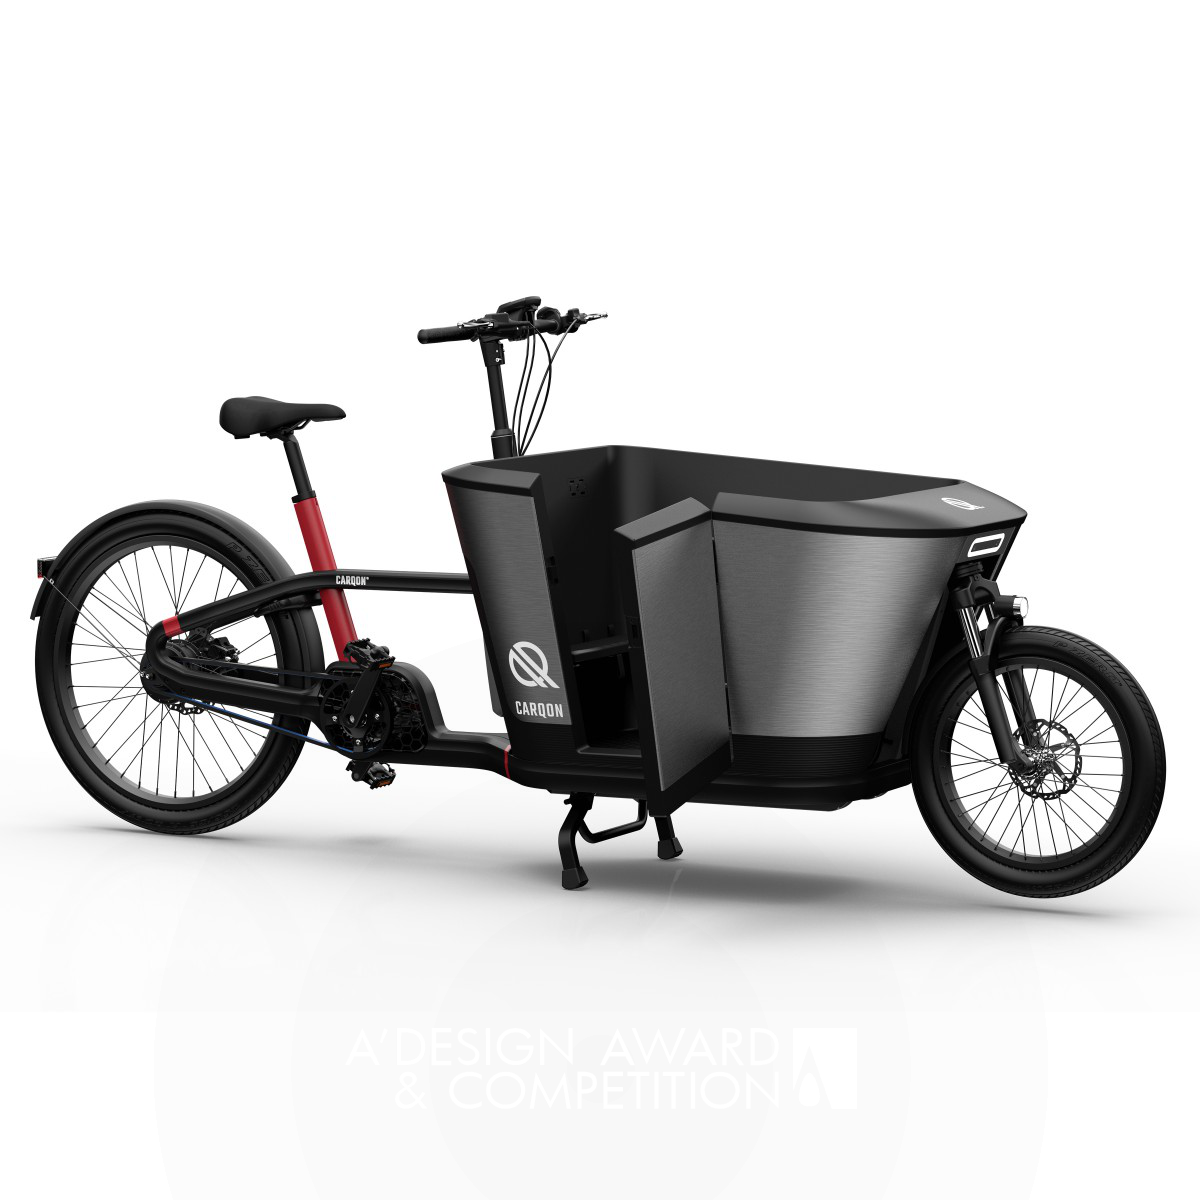 Carqon <b>Electric Cargo Bike